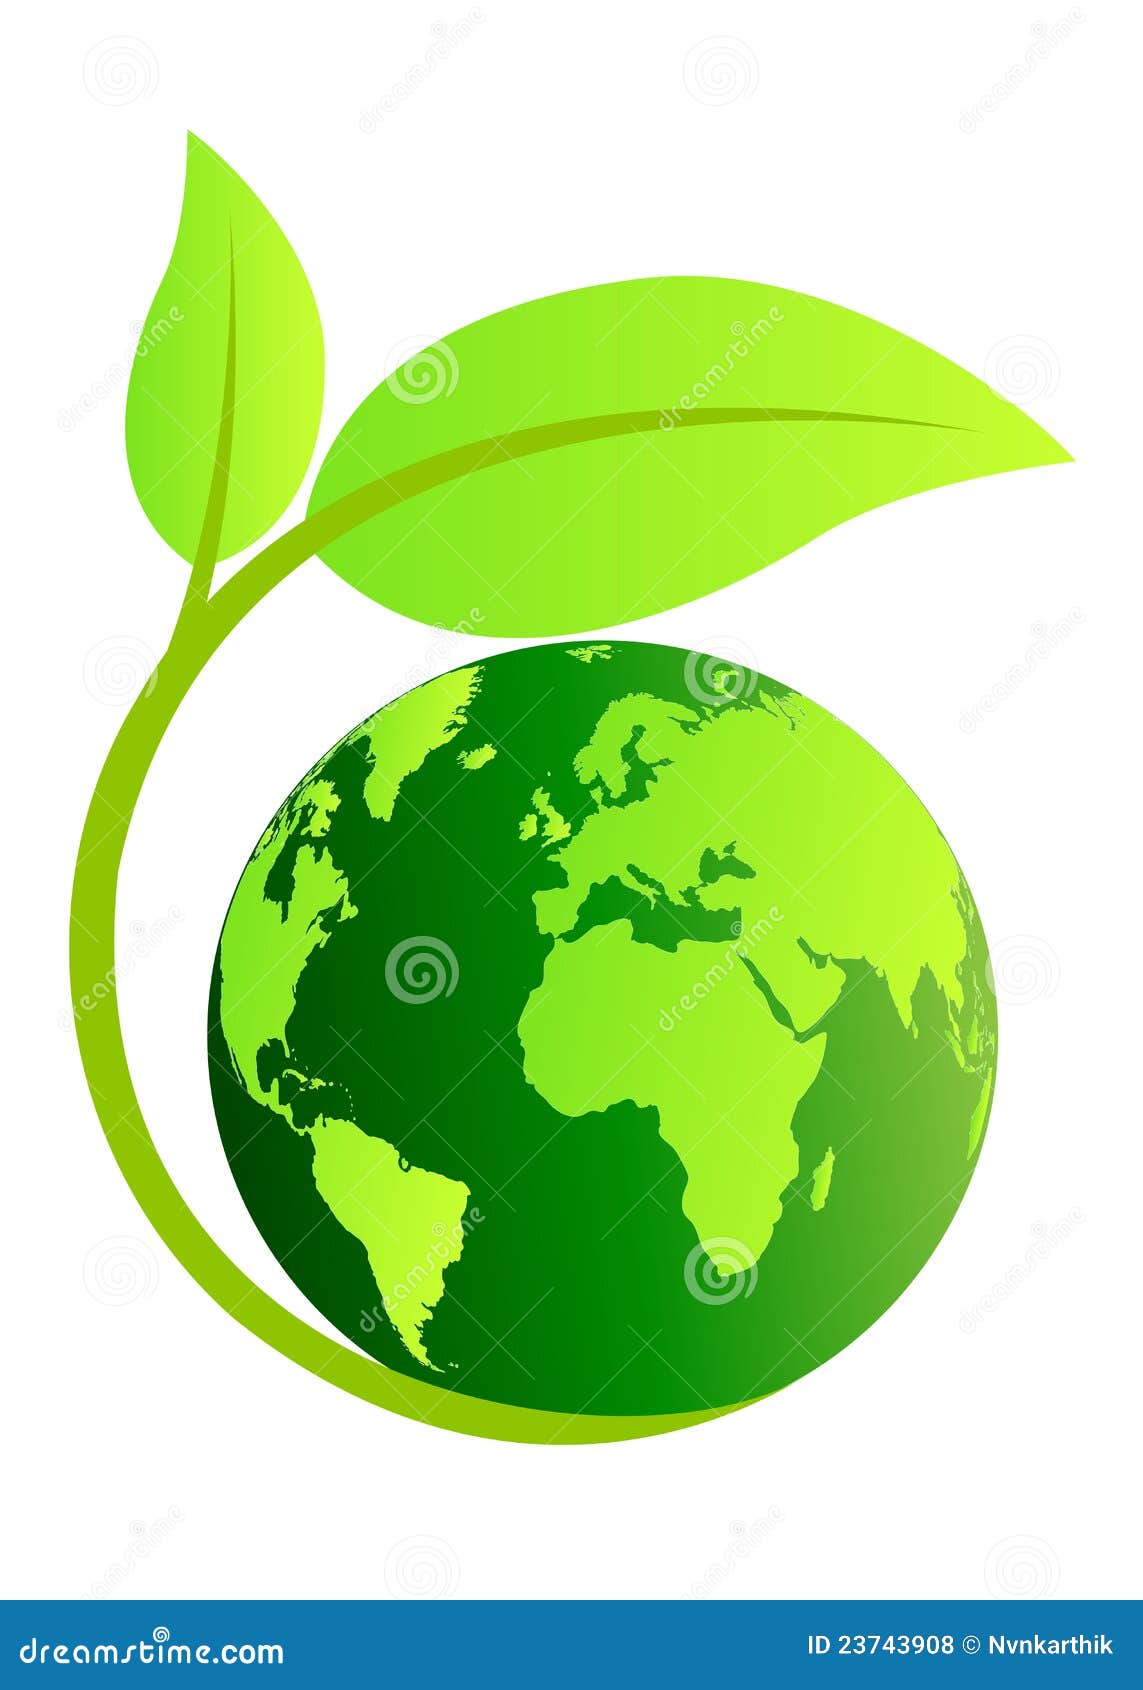 ecology globe